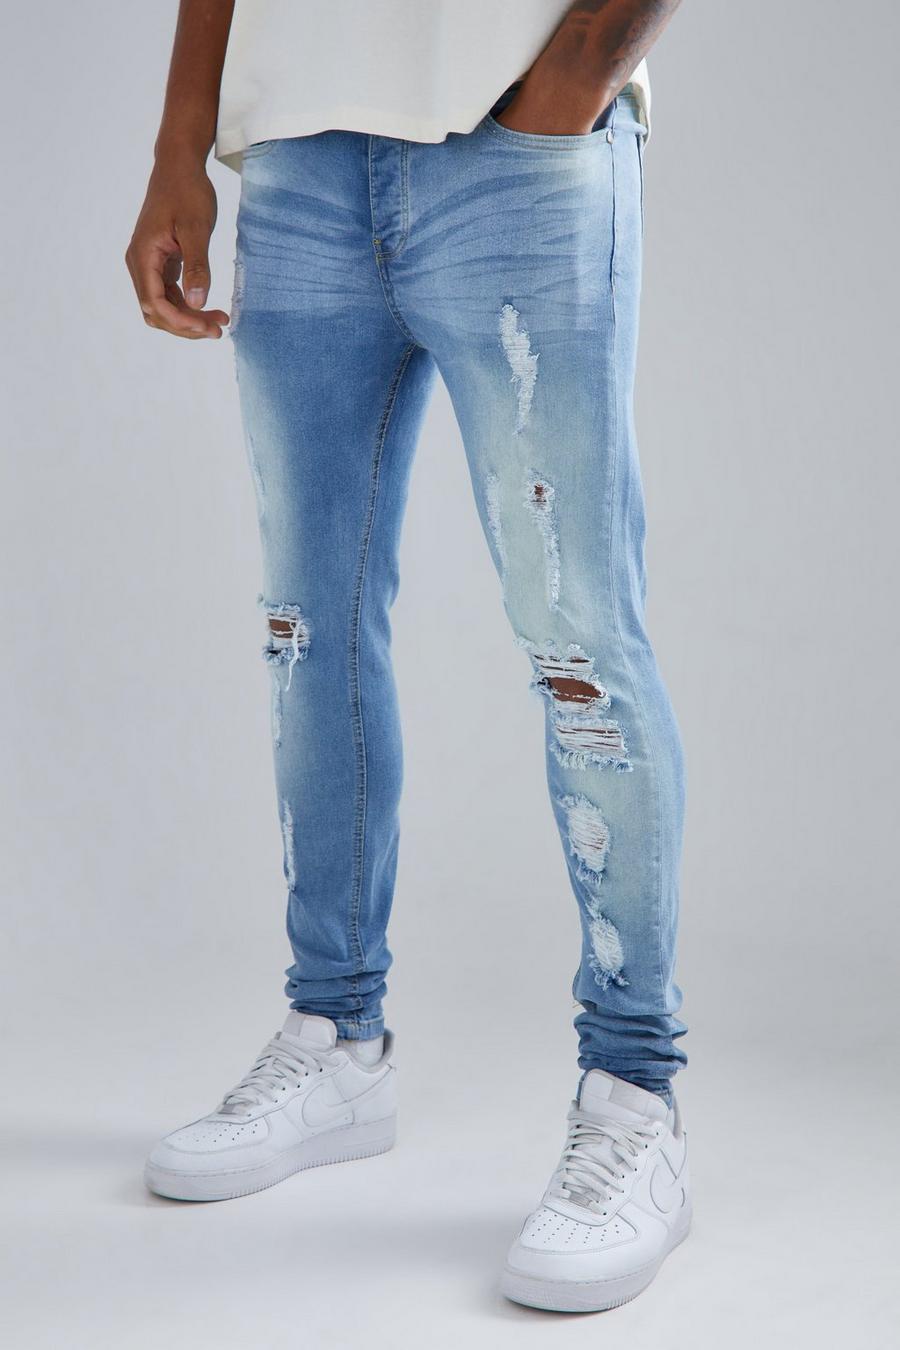 omvendt Efterligning flyde over Men's Tall Jeans | boohoo UK